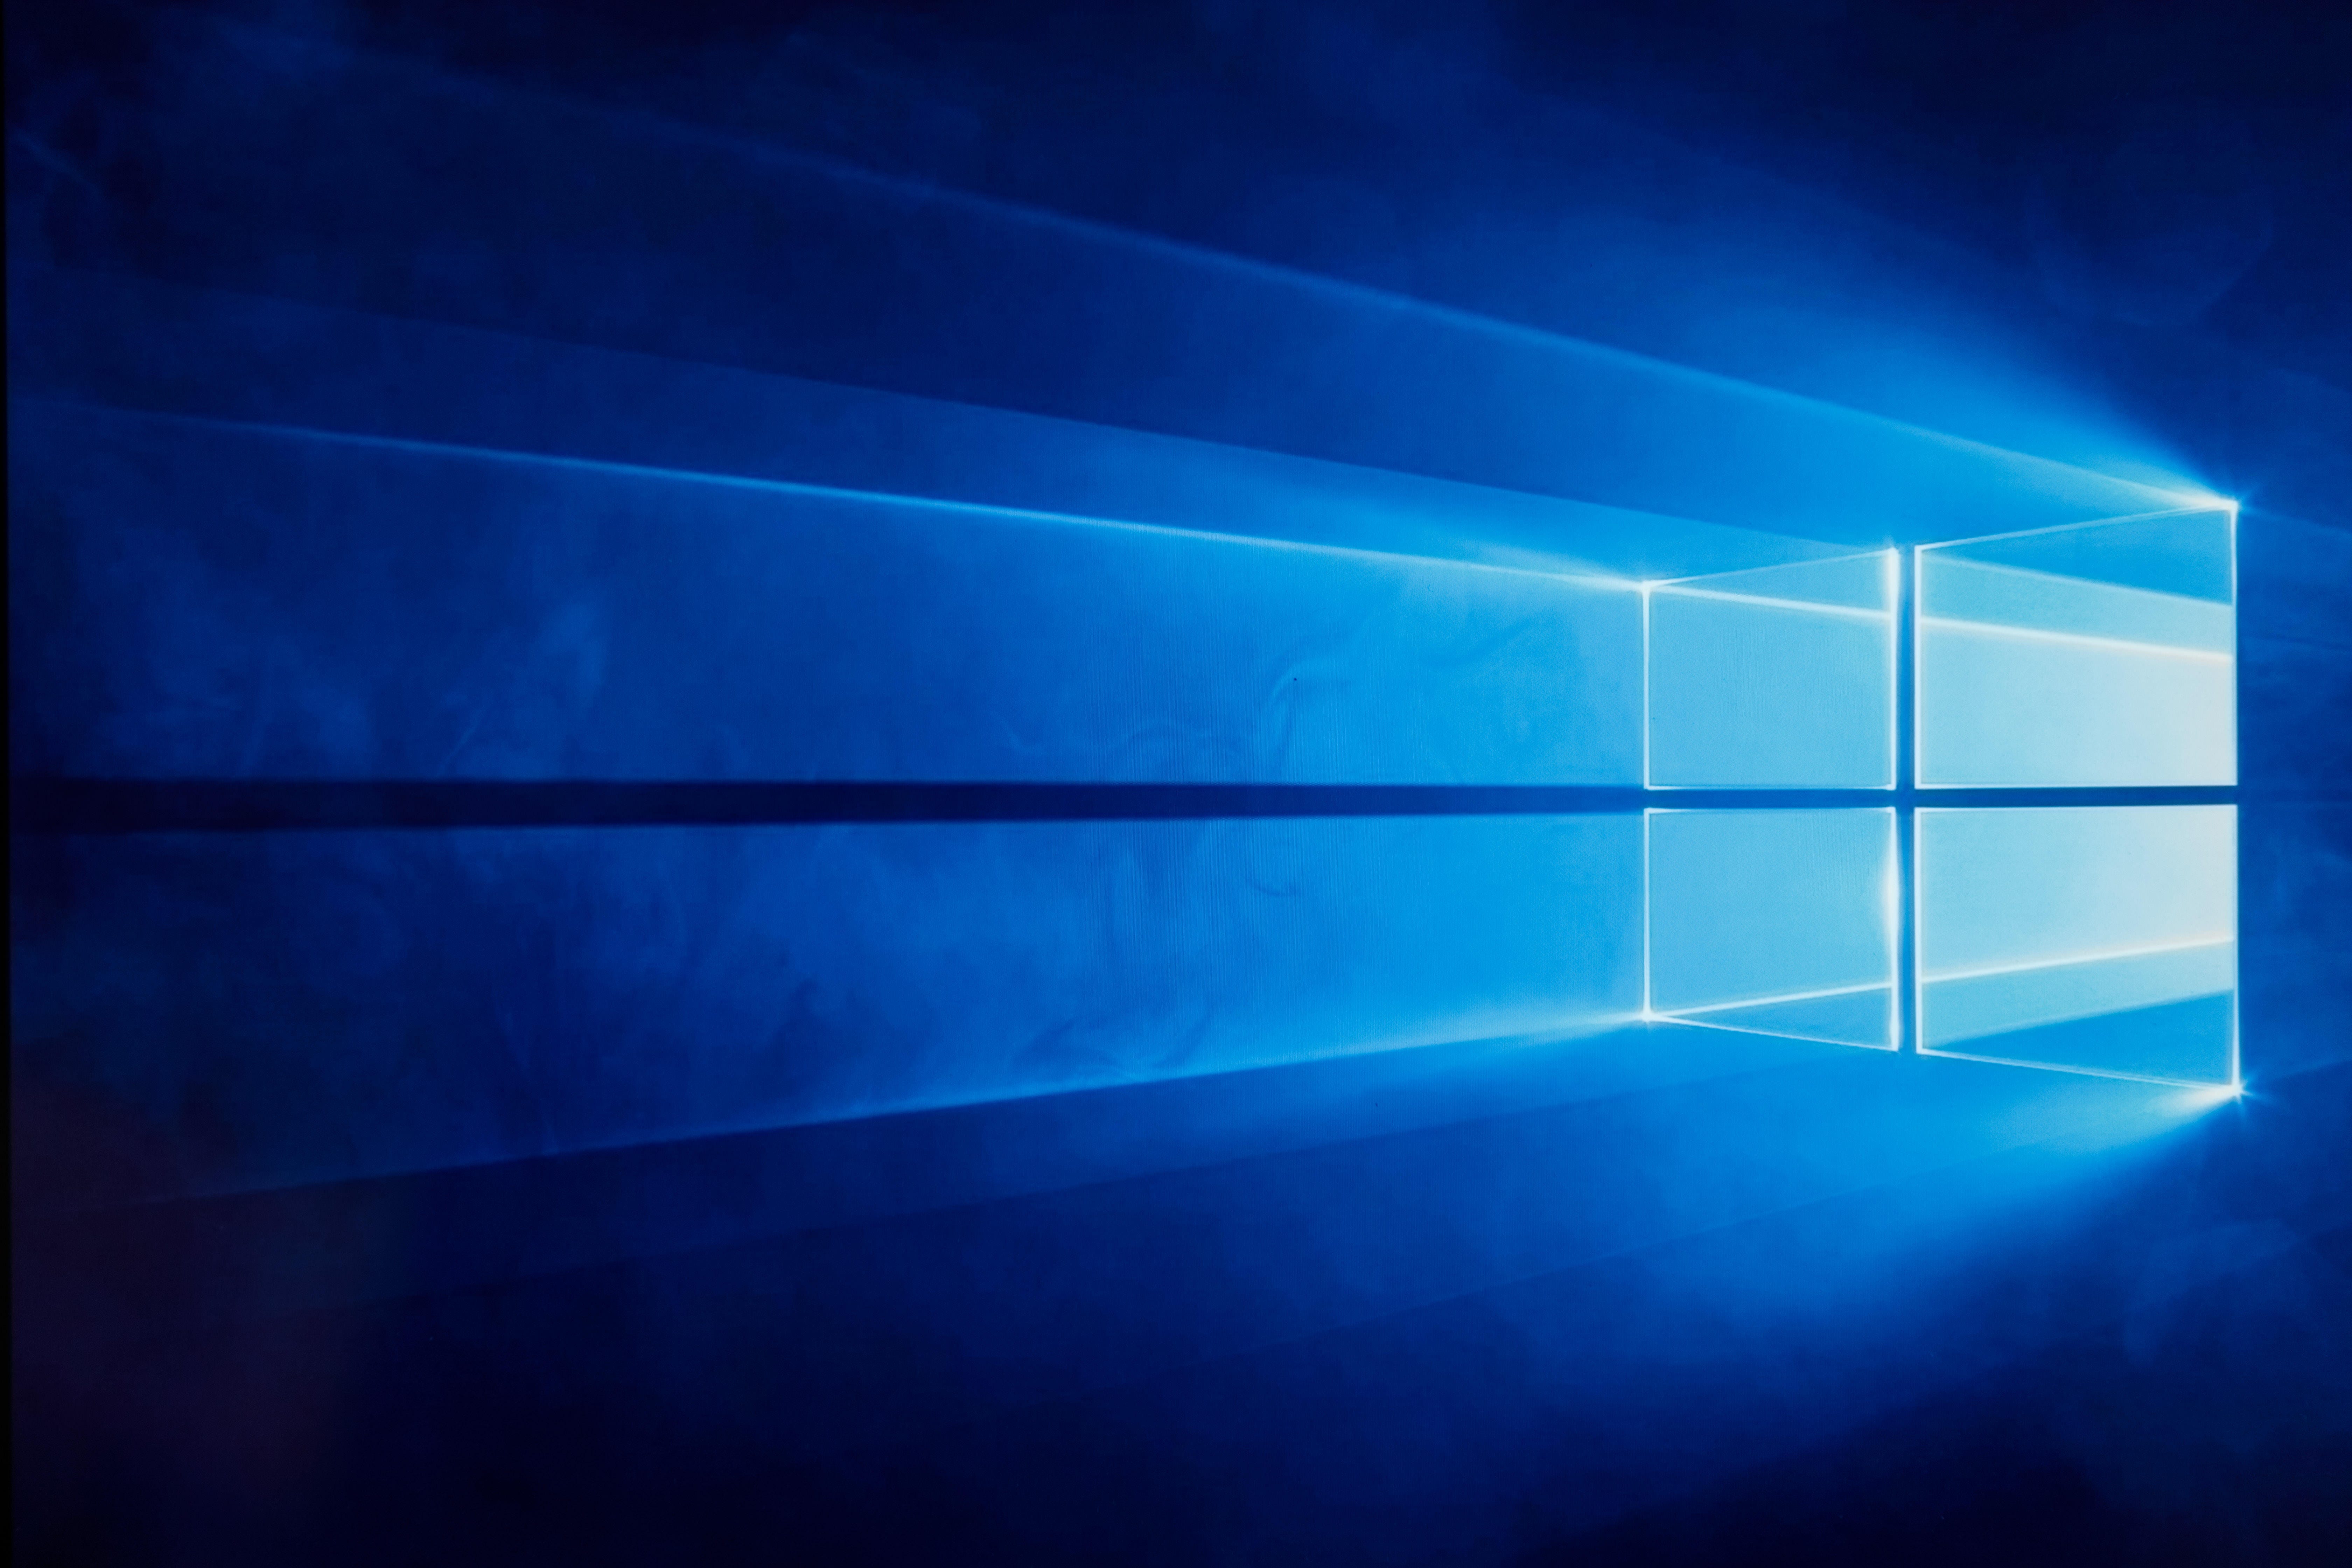 Cách Bật Chế Độ Tối Trên Windows 10 (How to Enable Dark Mode on Windows 10): Chế độ tối trên Windows 10 sẽ giúp cho màn hình máy tính của bạn trở nên thuận tiện và dễ nhìn hơn vào buổi tối. Với hướng dẫn chi tiết về cách bật Chế độ Tối, bạn có thể dễ dàng tạo ra một nền tối đơn giản và tinh tế cho máy tính của mình.